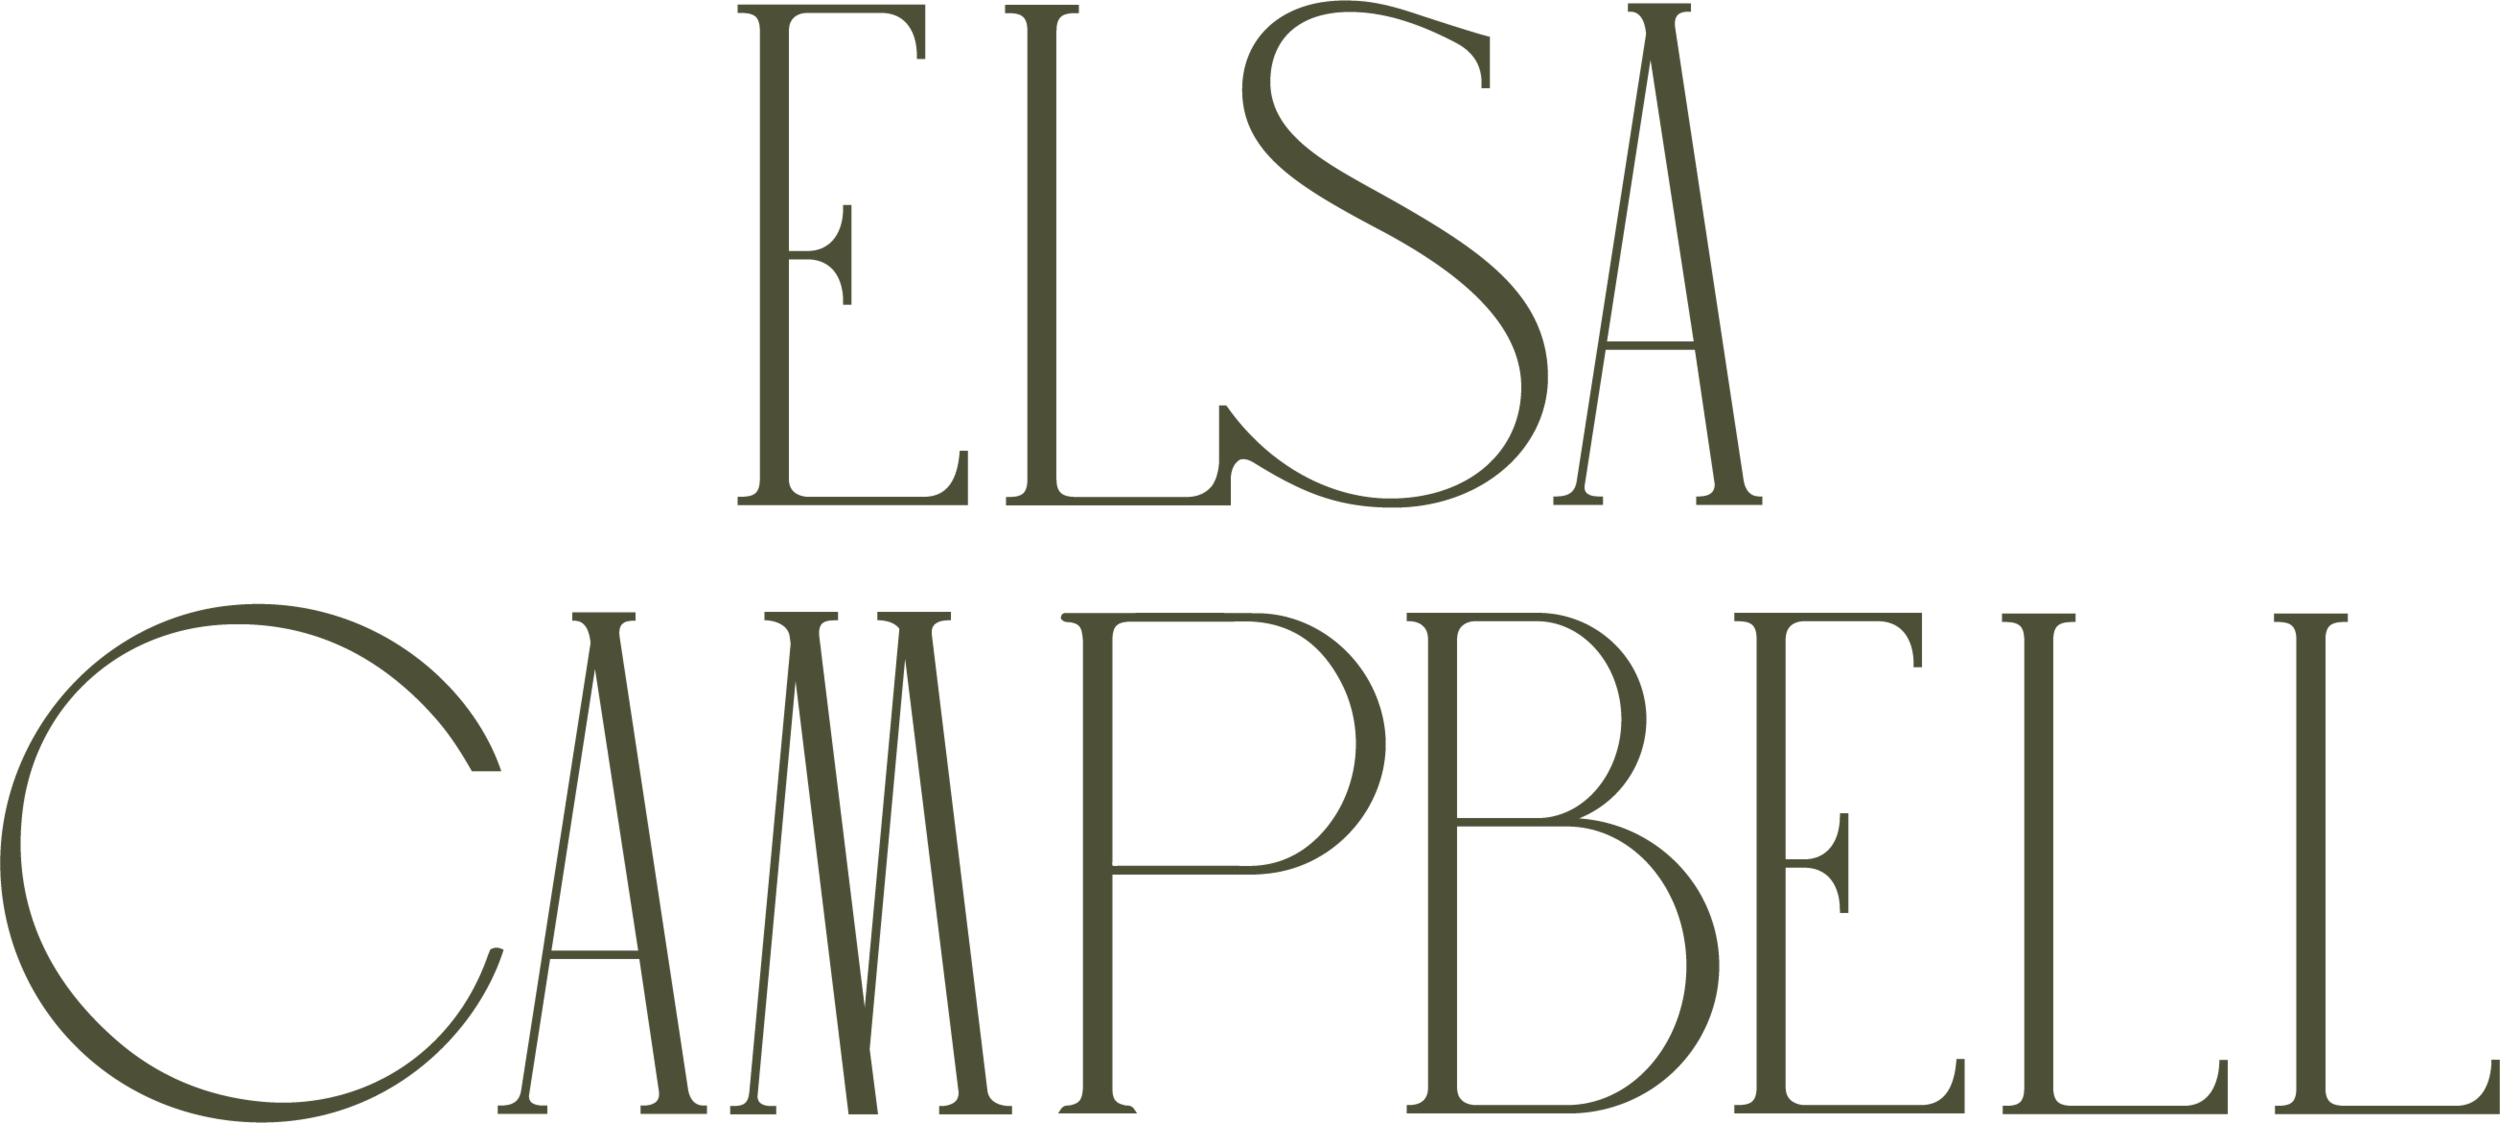 ELSA CAMPBELL